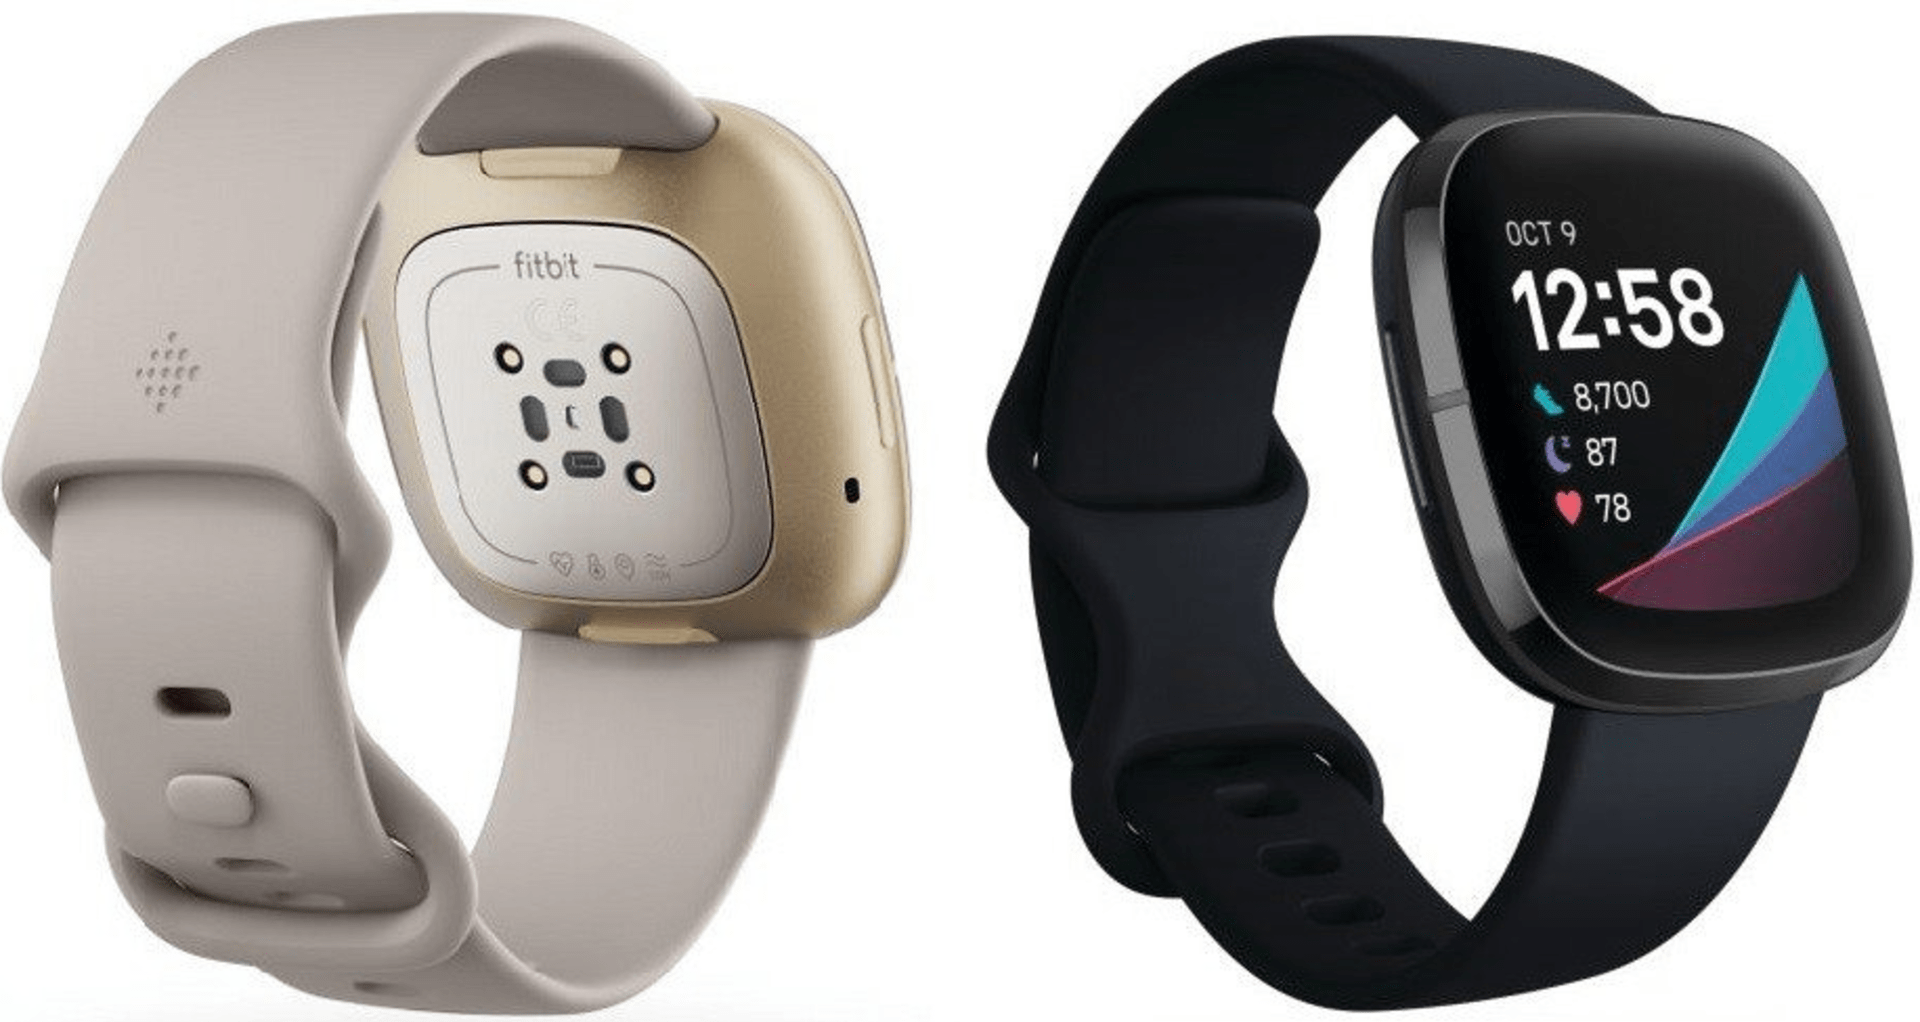 Chytré hodinky Fitbit Sense